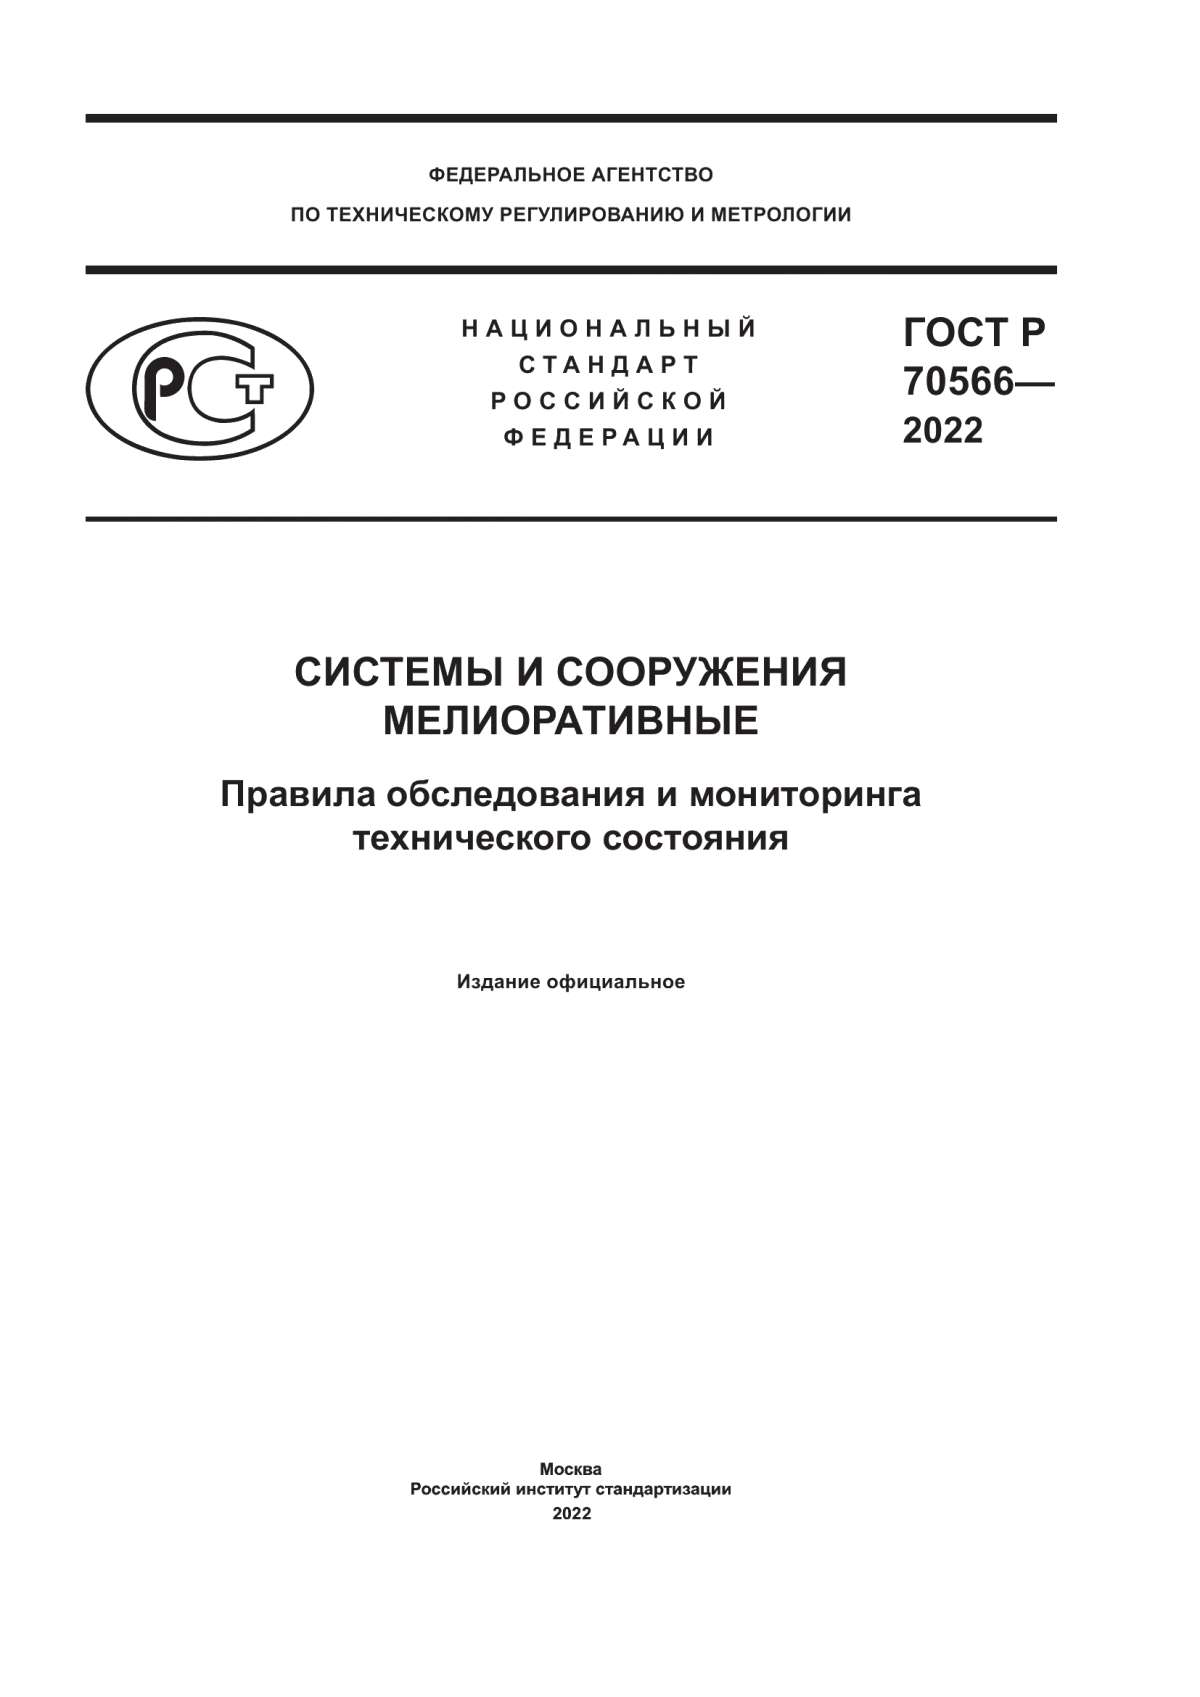 ГОСТ Р 70566-2022 Системы и сооружения мелиоративные. Правила обследования и мониторинга технического состояния